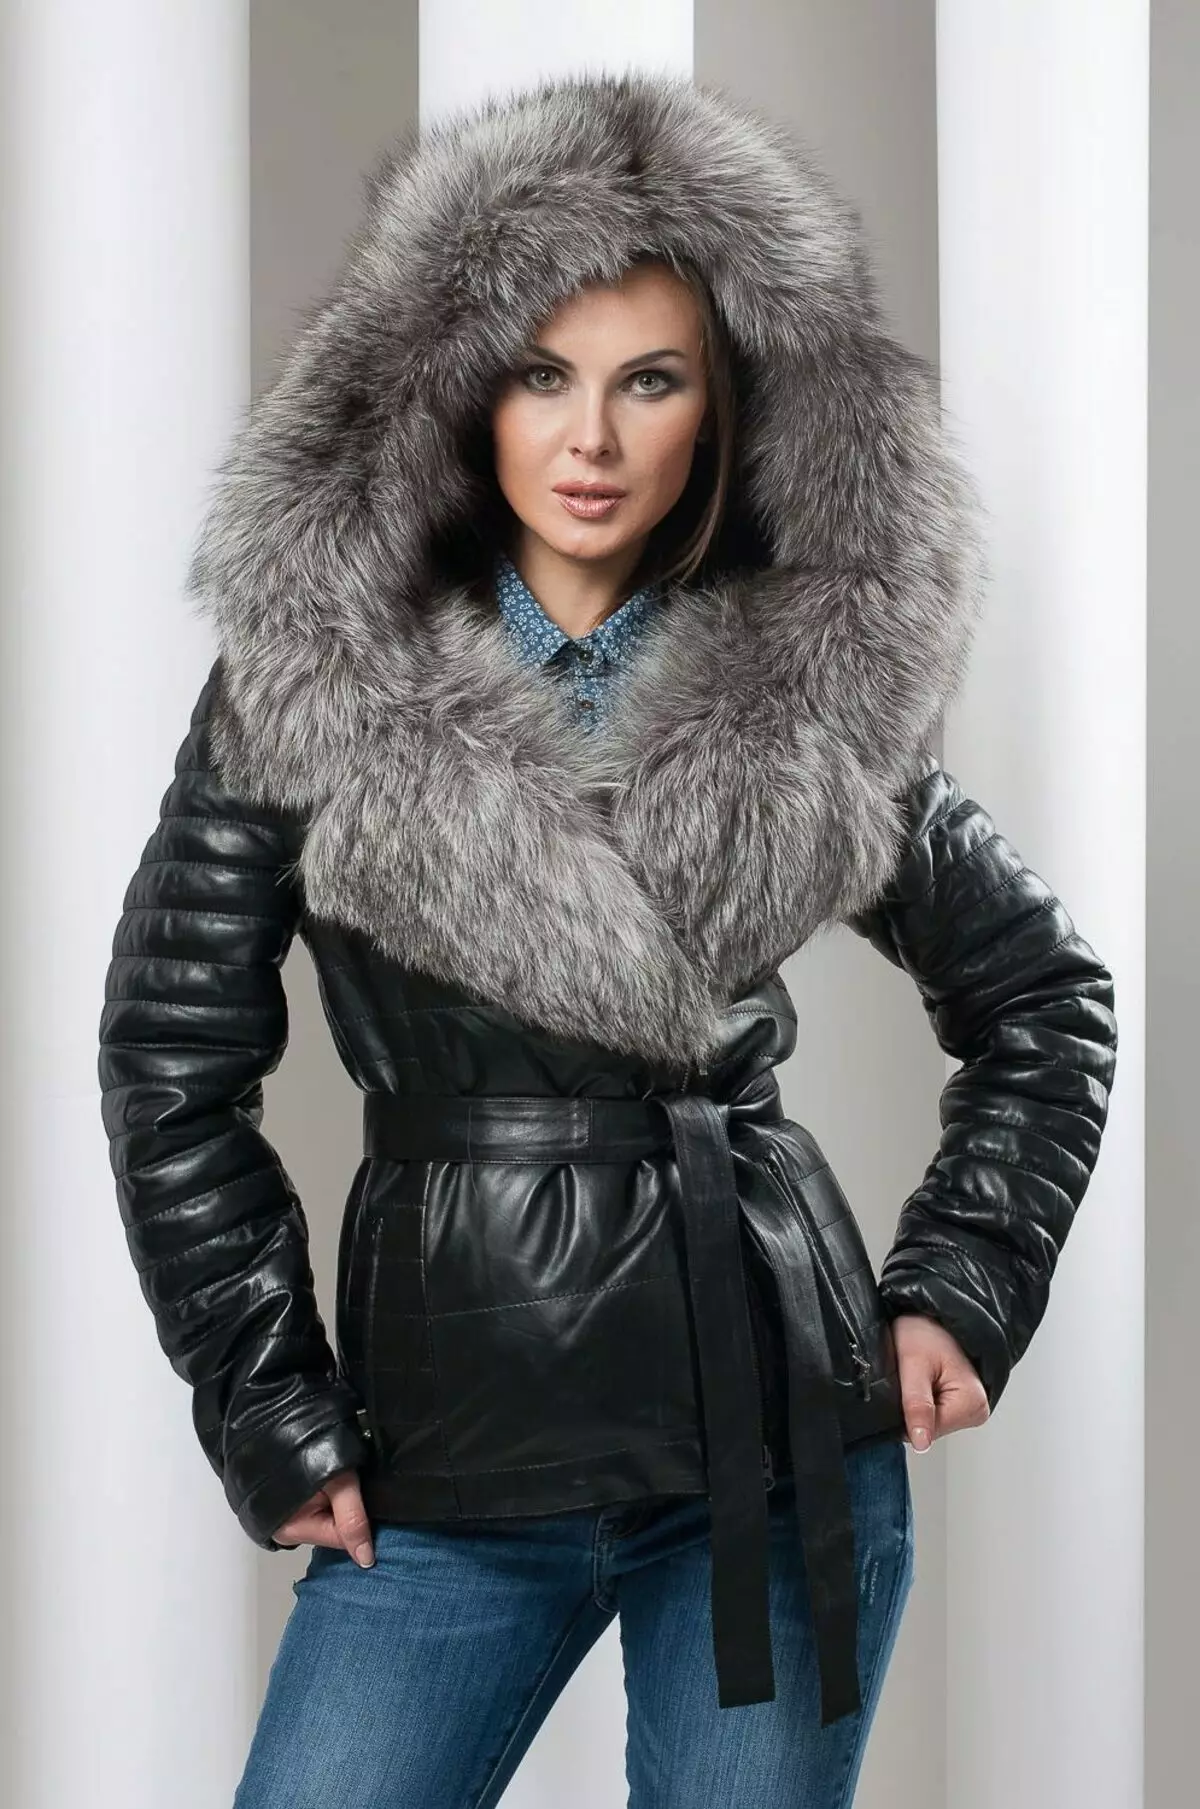 Chernoburka Coat (39 fotoğraflar): Siyah, Kara Burger Yaka, Uzun, Mouton ile Chinburque Trim ile Kadın Ceket